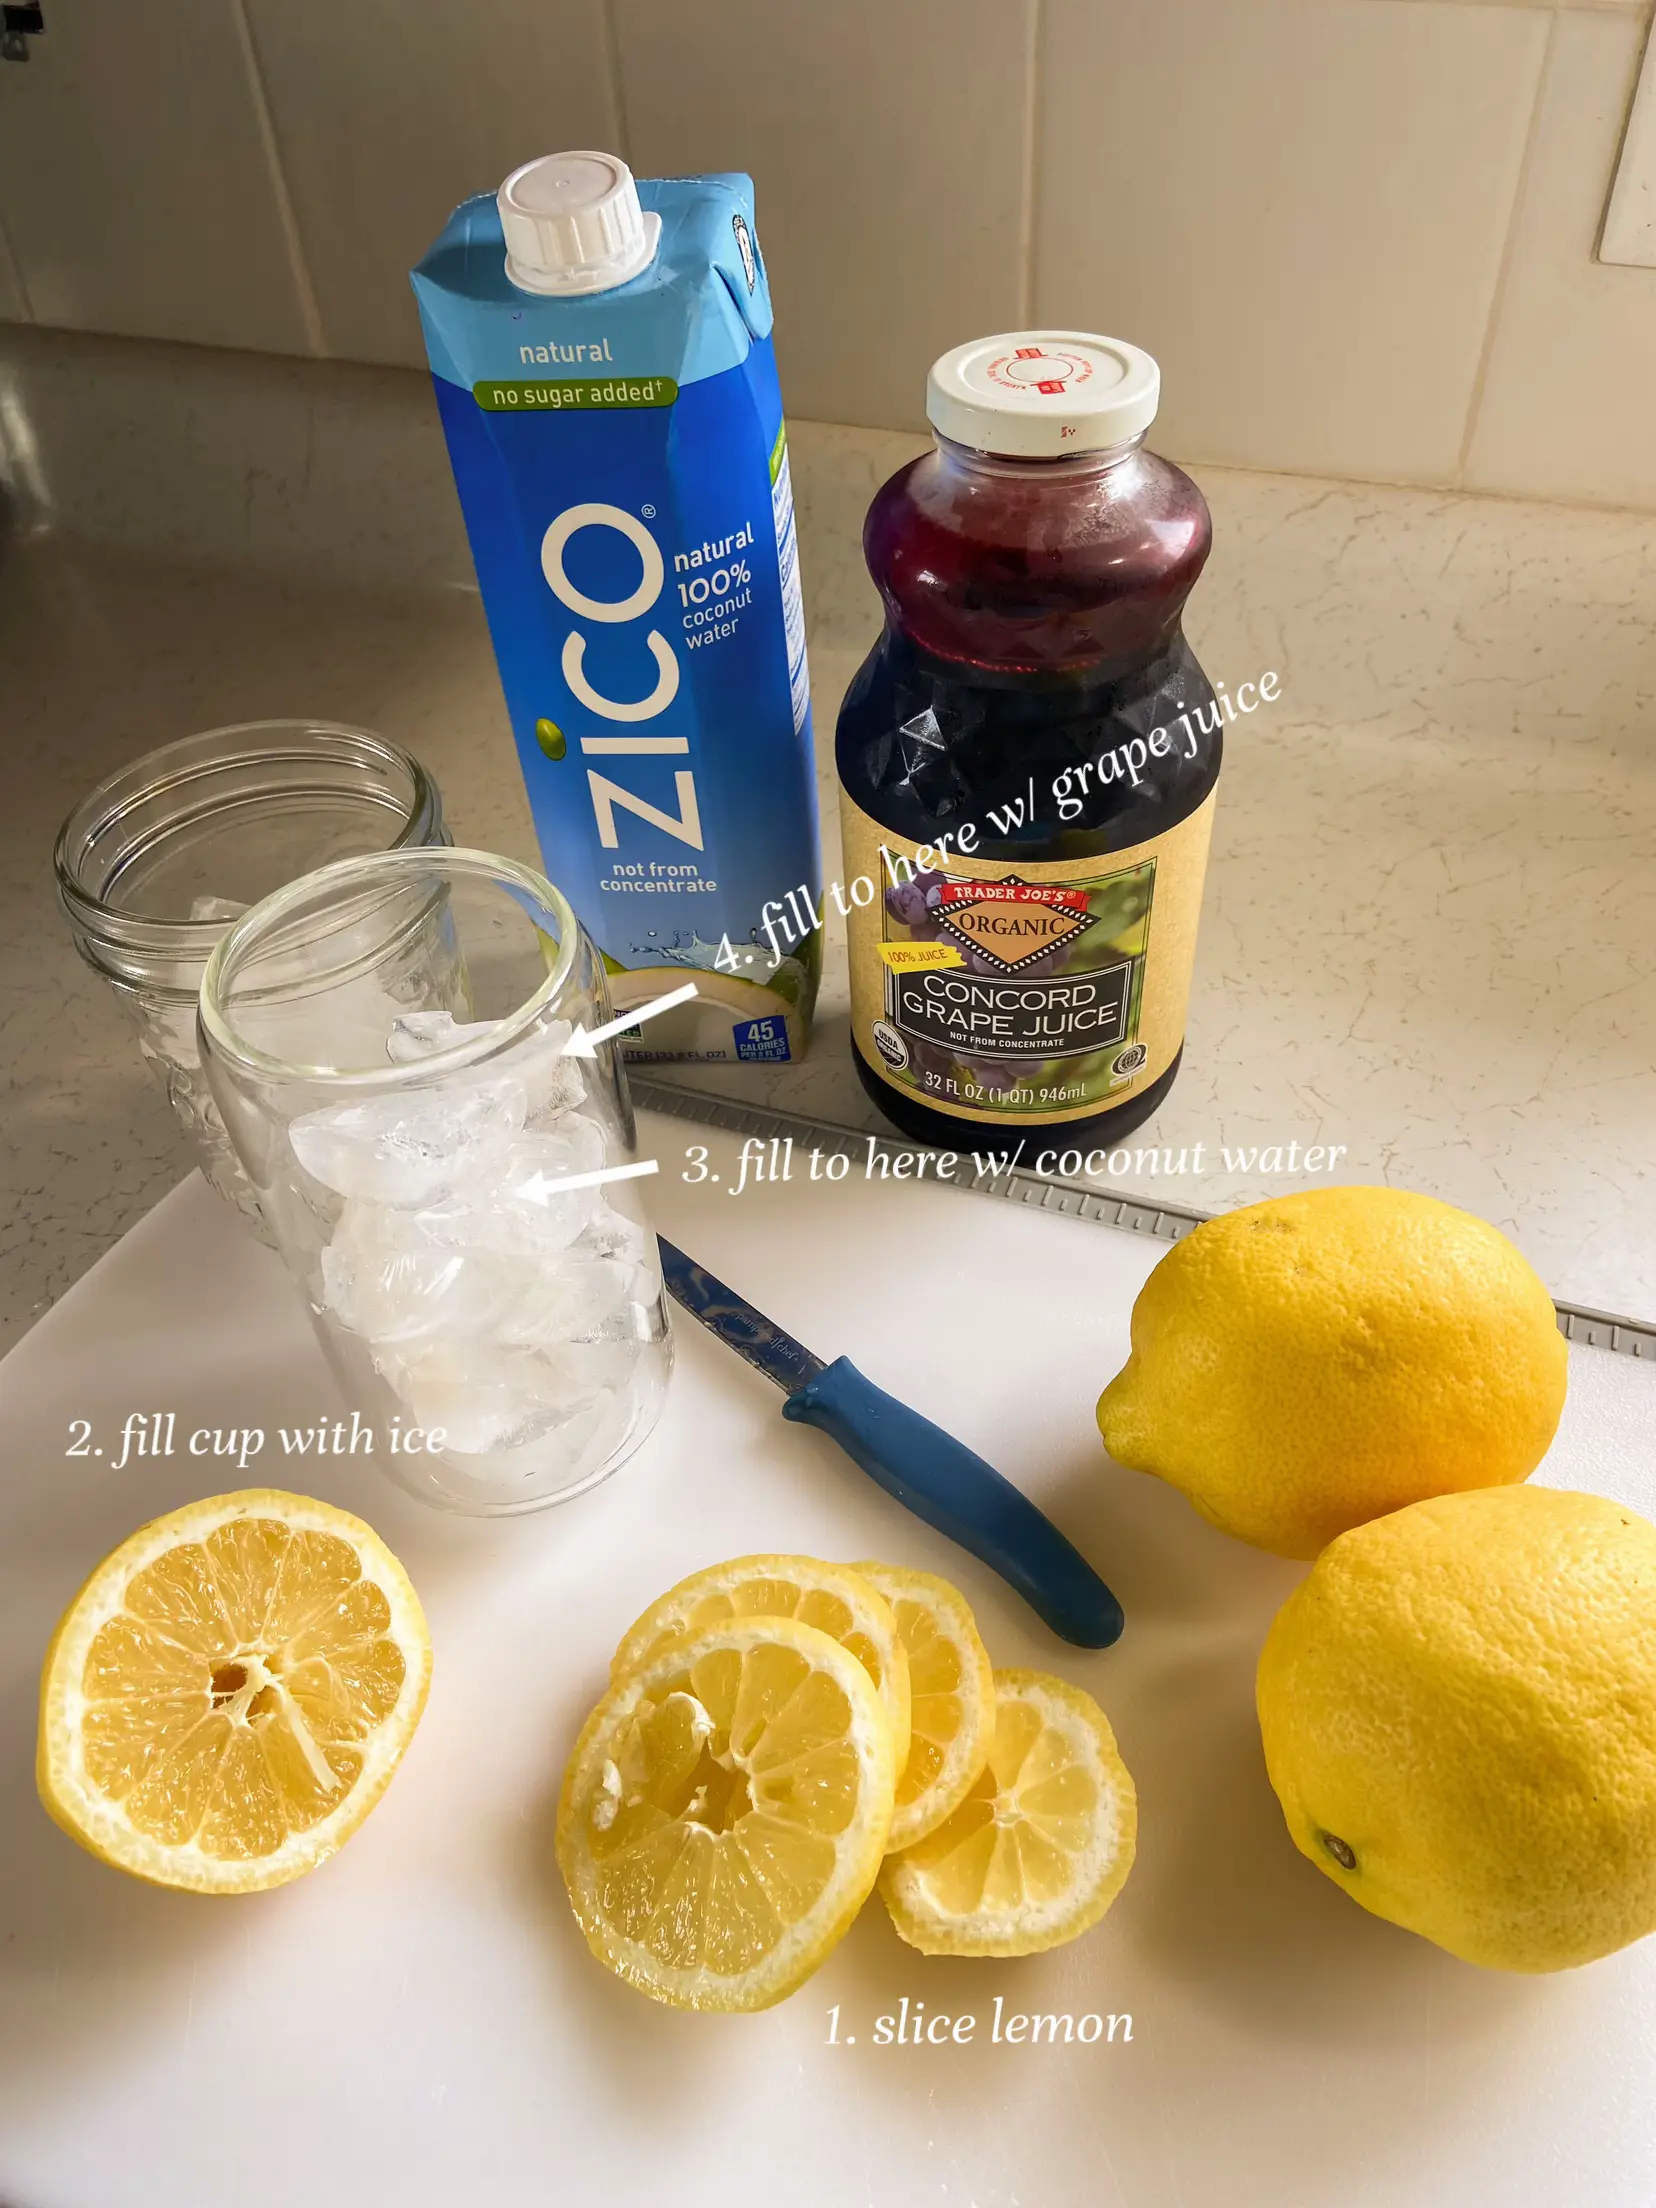 Brand - Happy Belly 100% Lemon Juice, 32 Fl Oz Bottle